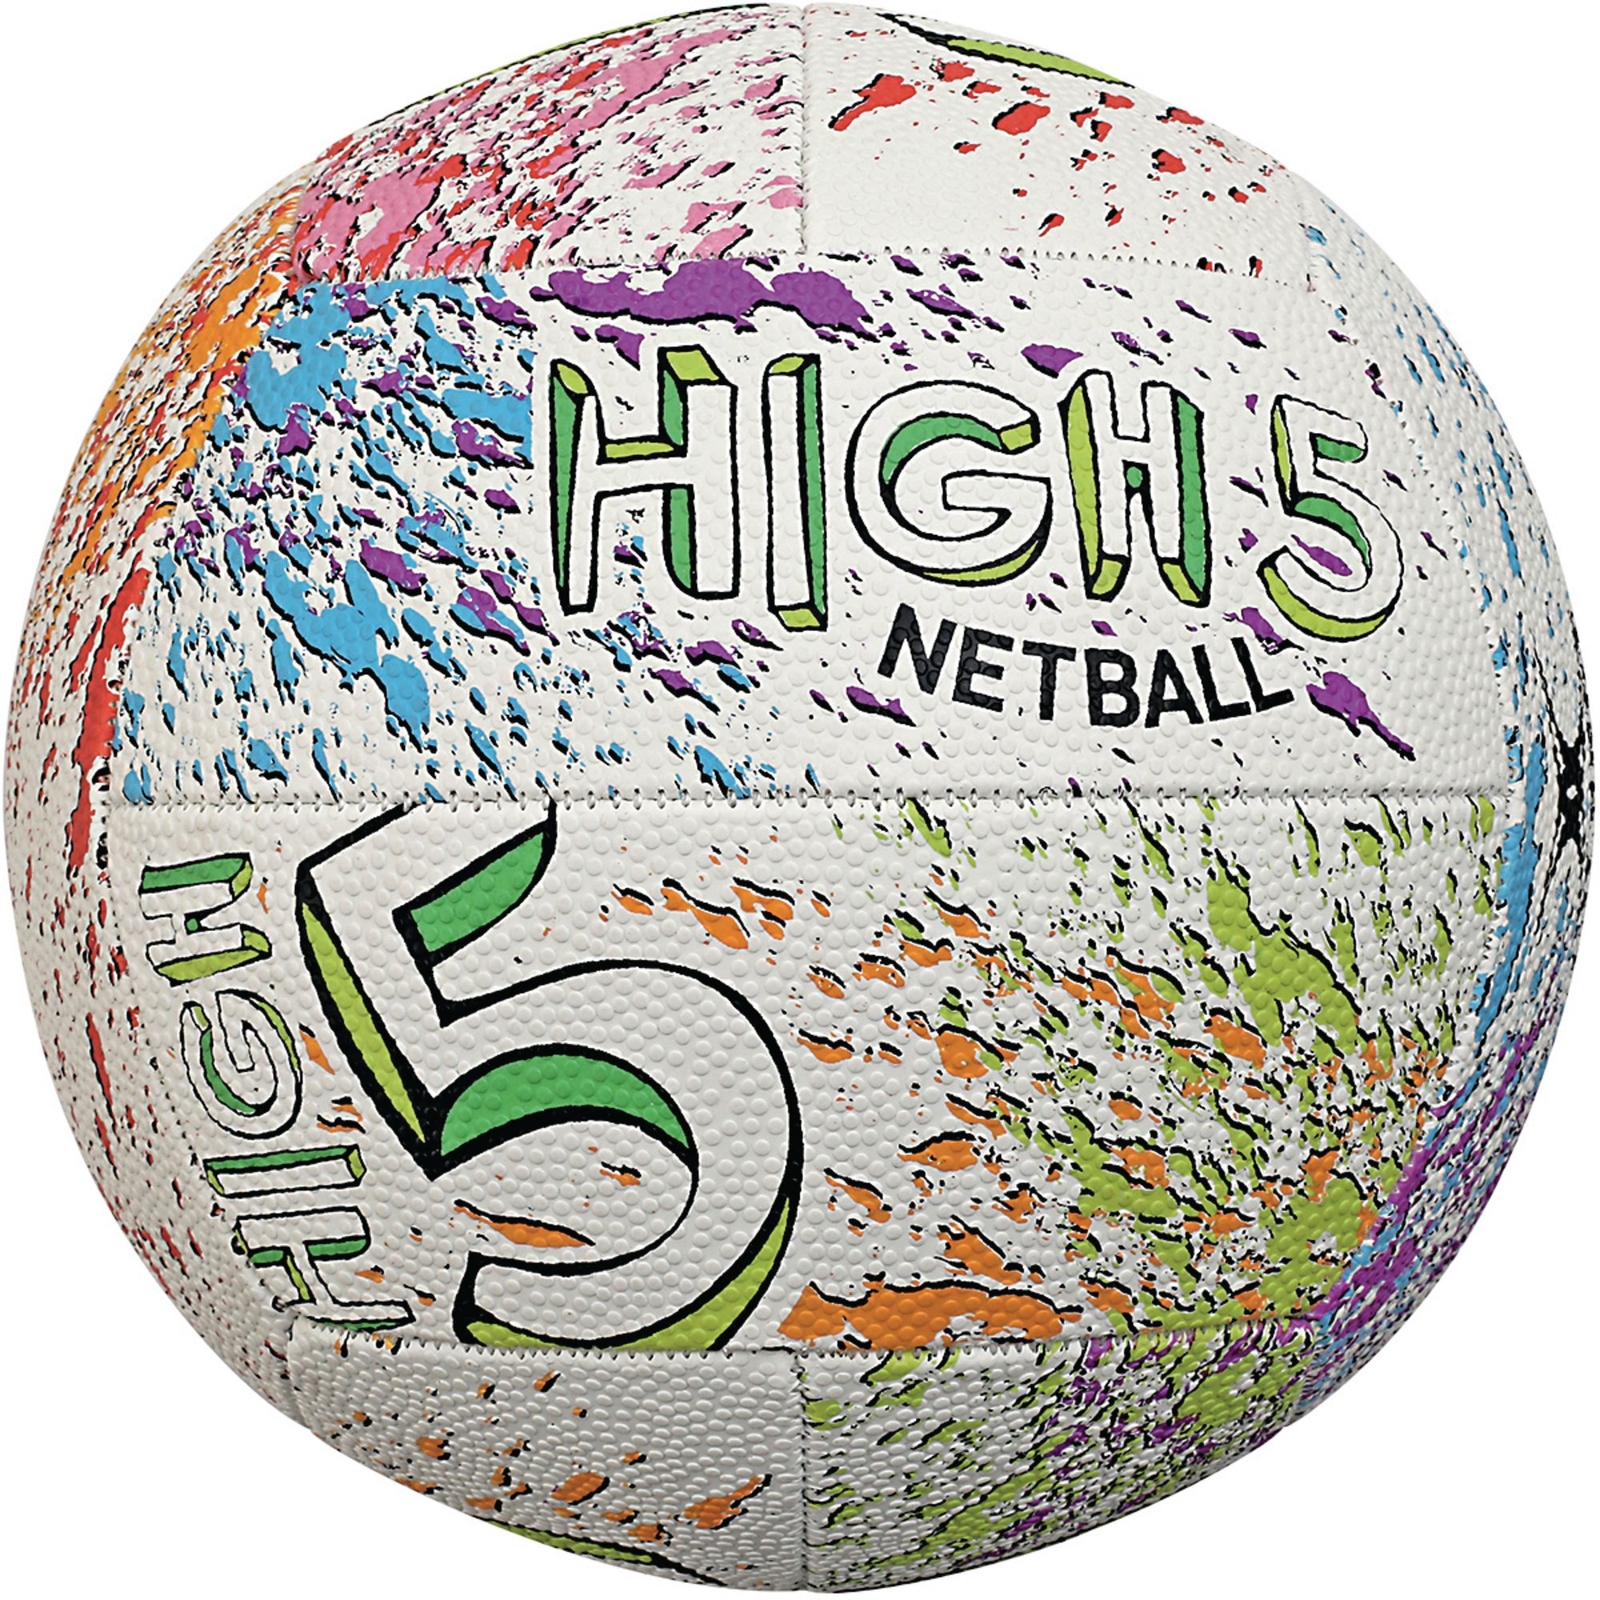 High Fives Netball - Size 4